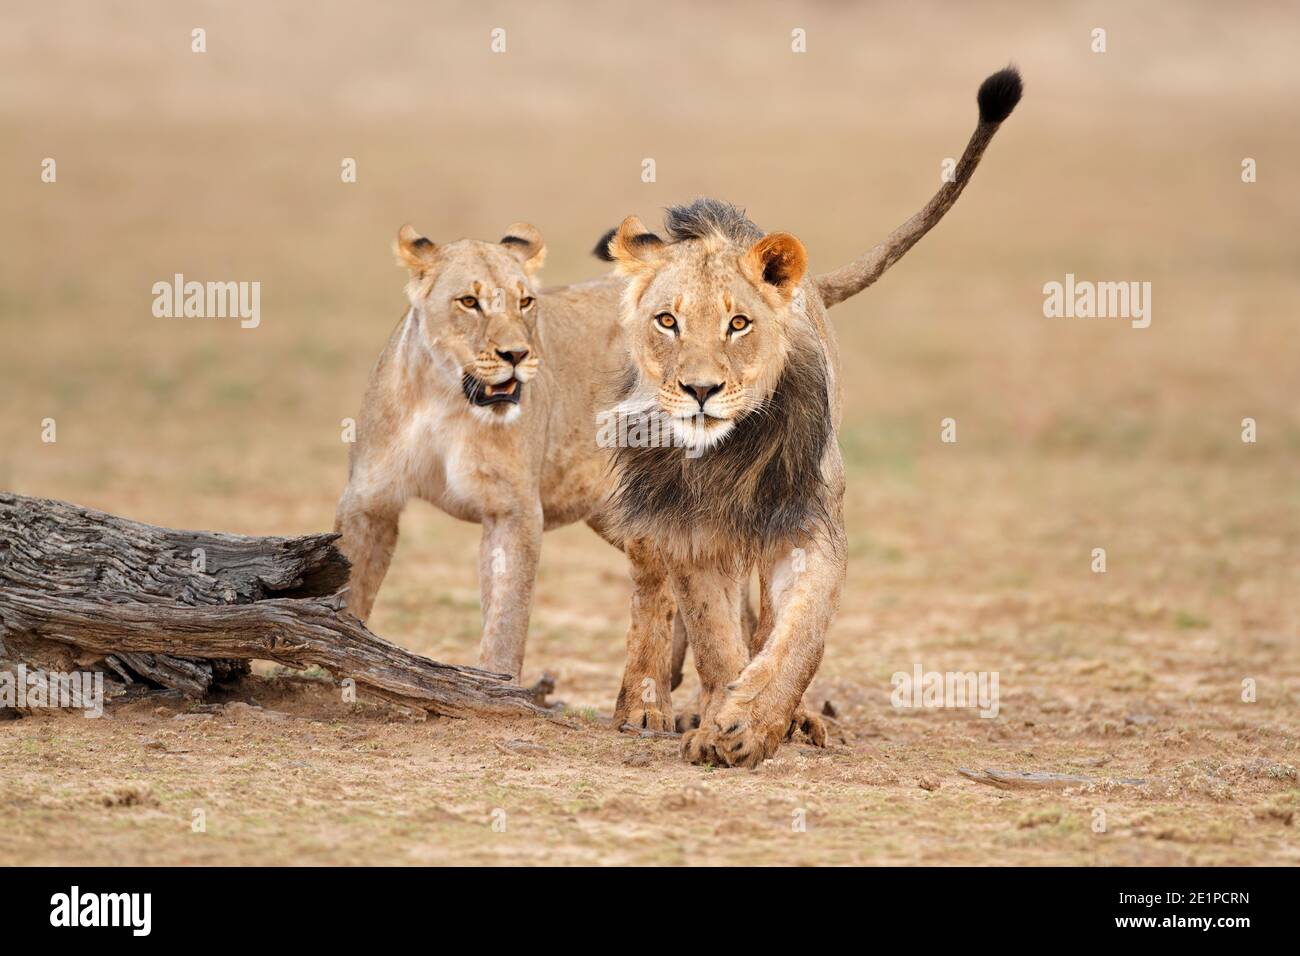 Lions africains mâles et femelles (Panthera leo), désert de Kalahari, Afrique du Sud Banque D'Images